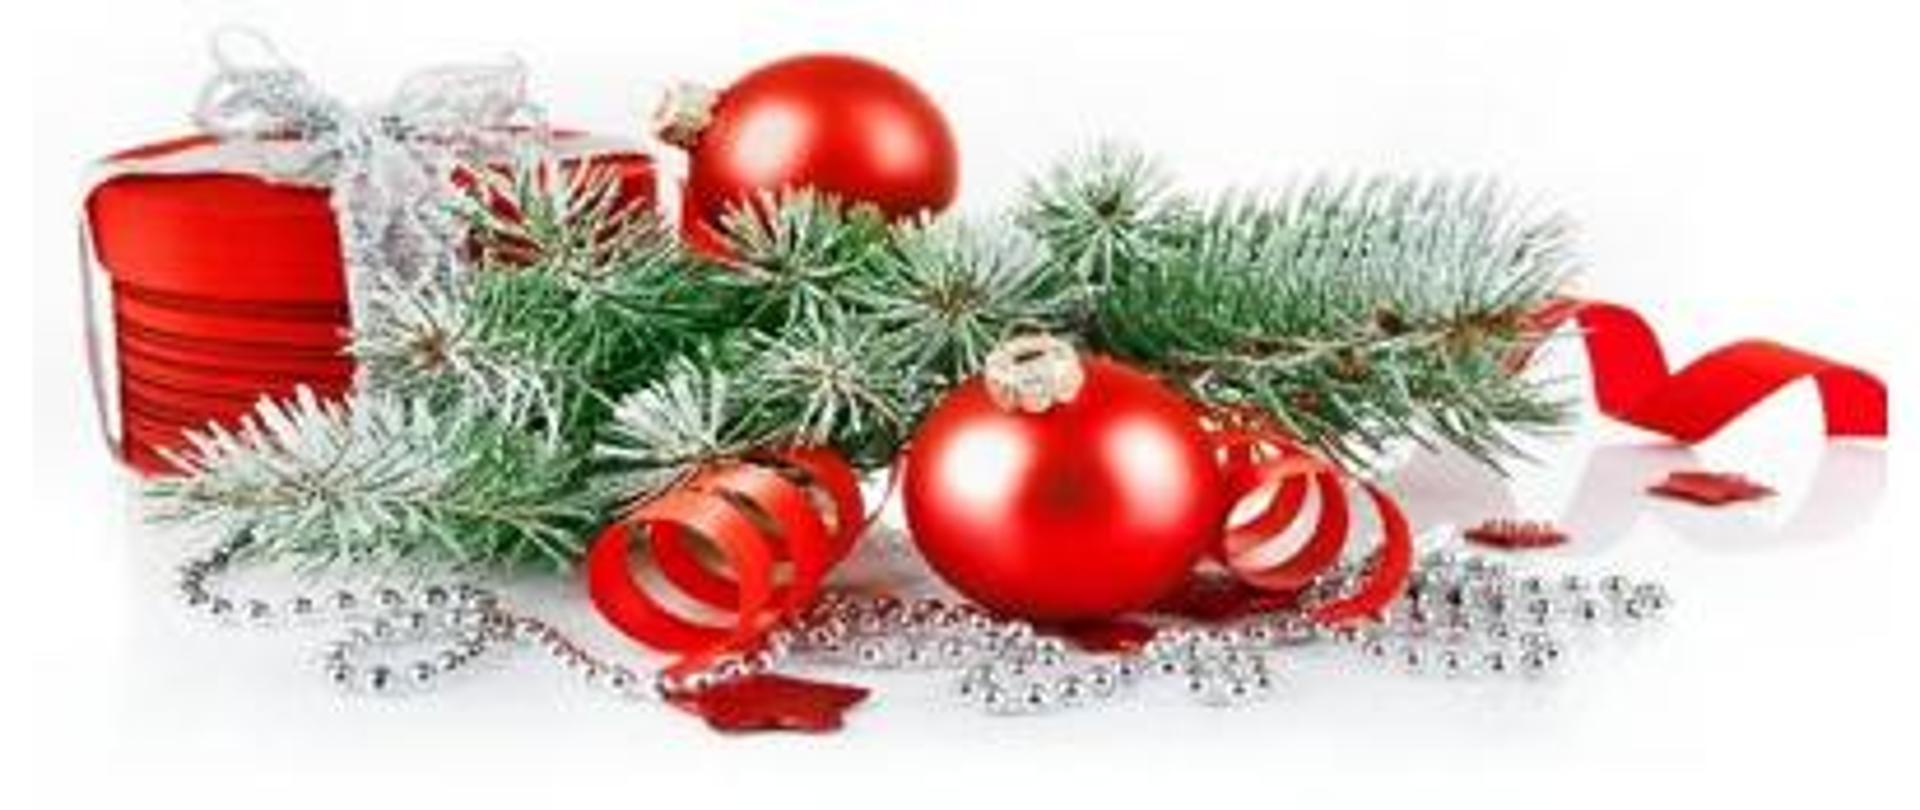 grafika przedstawia stroik świąteczny - bombki i gałązkę choinki